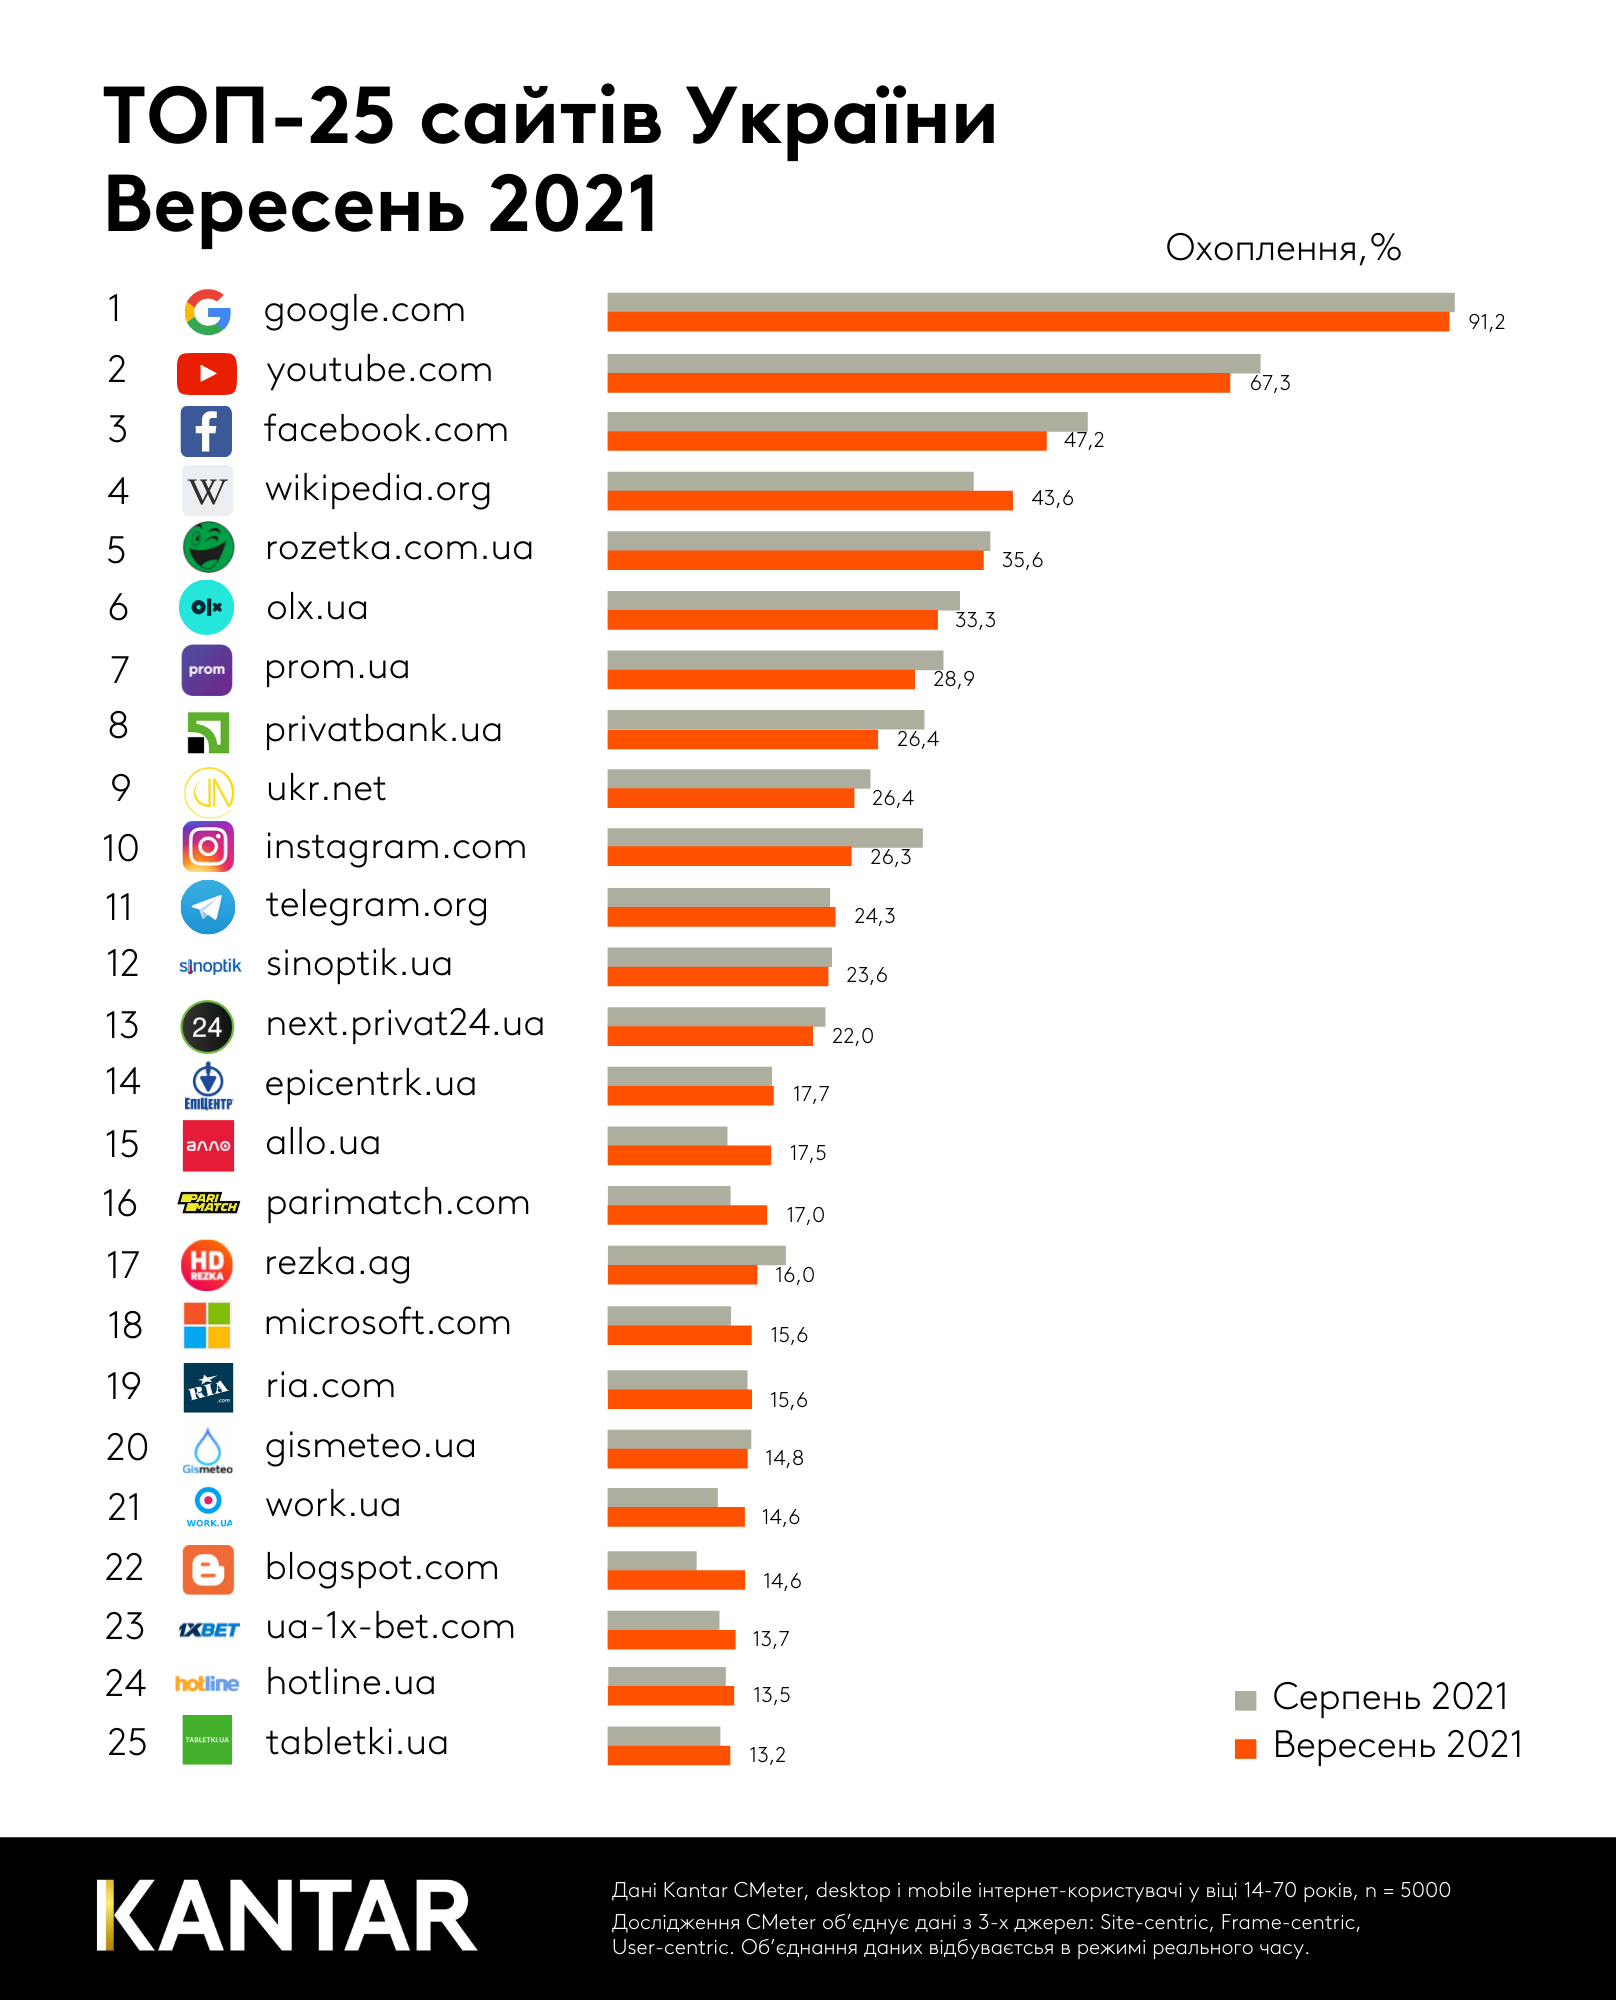 Топ-25 самых популярных сайтов в Украине